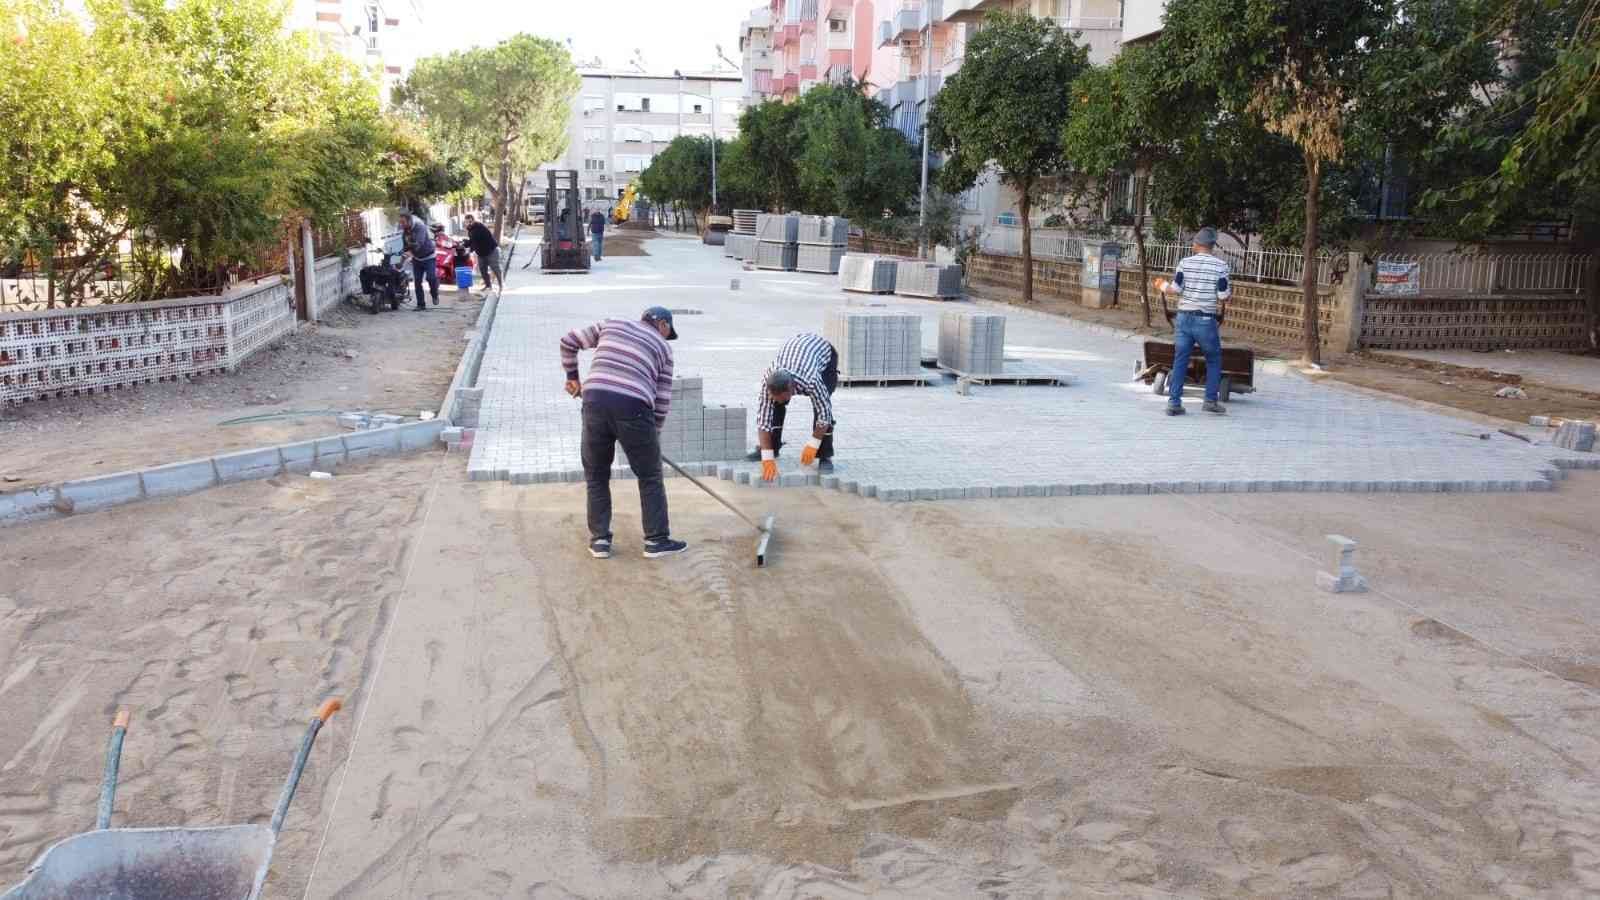 Nazilli Cumhuriyet Mahallesi’ndeki çalışmalarda sona gelindi #aydin